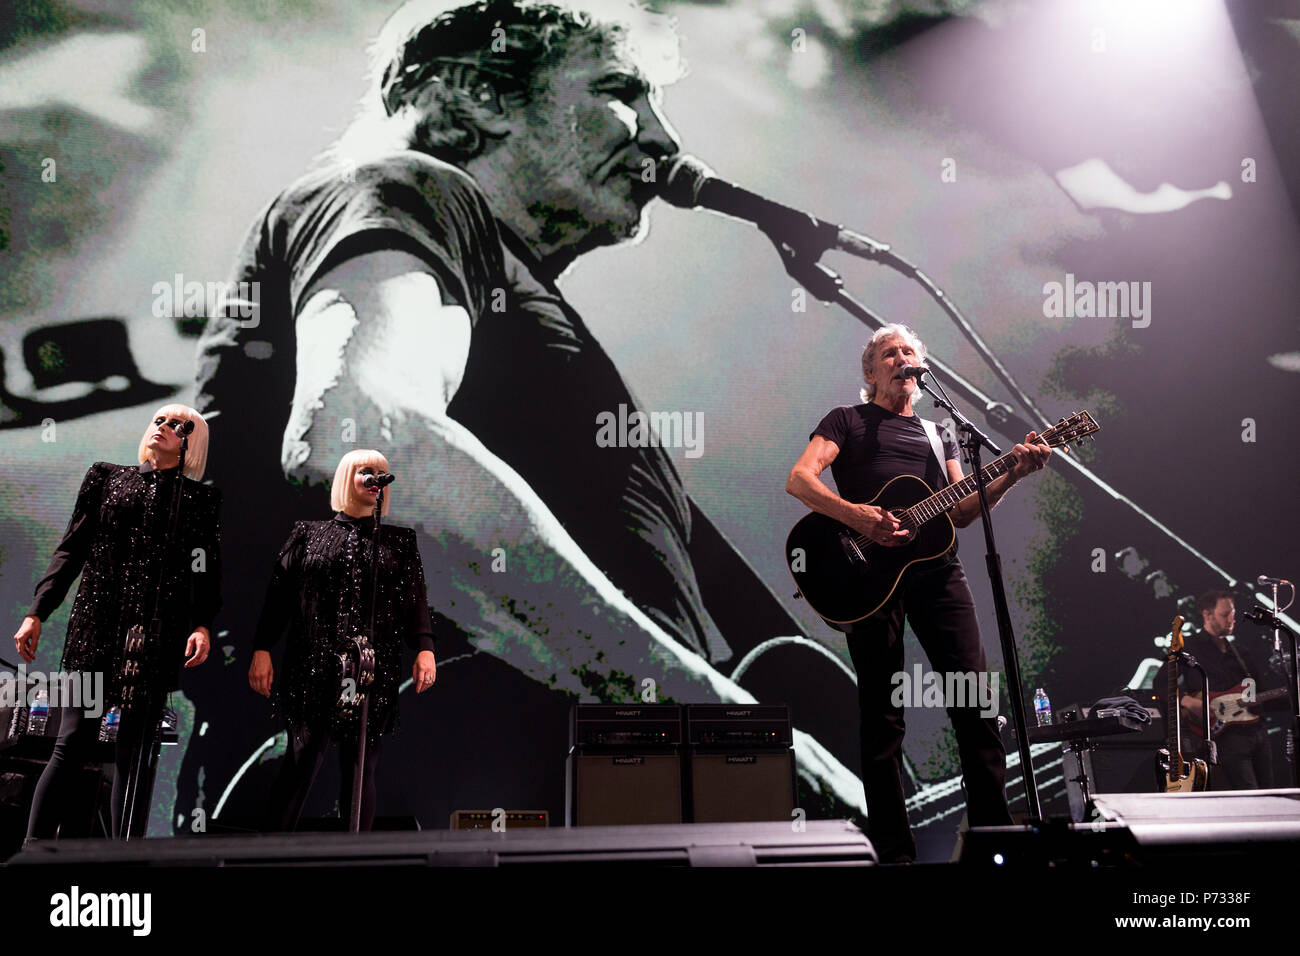 Roger Waters (Pink Floyd) führt live auf der Bühne während seiner Uns + diese Tour in der Manchester Arena in Manchester, UK, 3. Juni 2018. Stockfoto